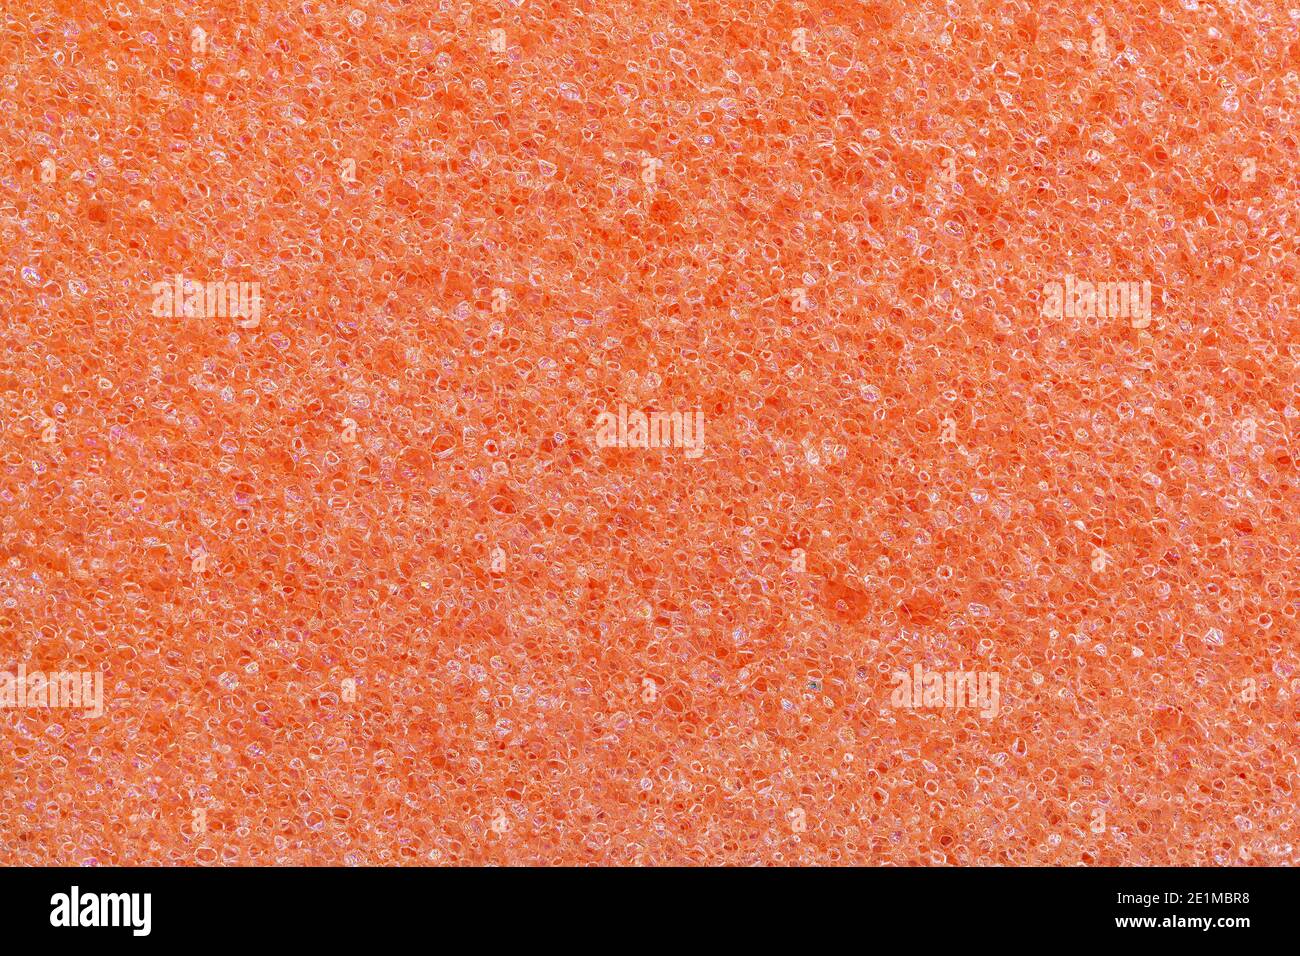 Orange Schaumstoff Küche Schwamm Textur. Vollformat-Makrofotografie von porösem Kunststoff. Abstraktes Muster Hintergrund für Reinigung und Hausarbeit. Stockfoto